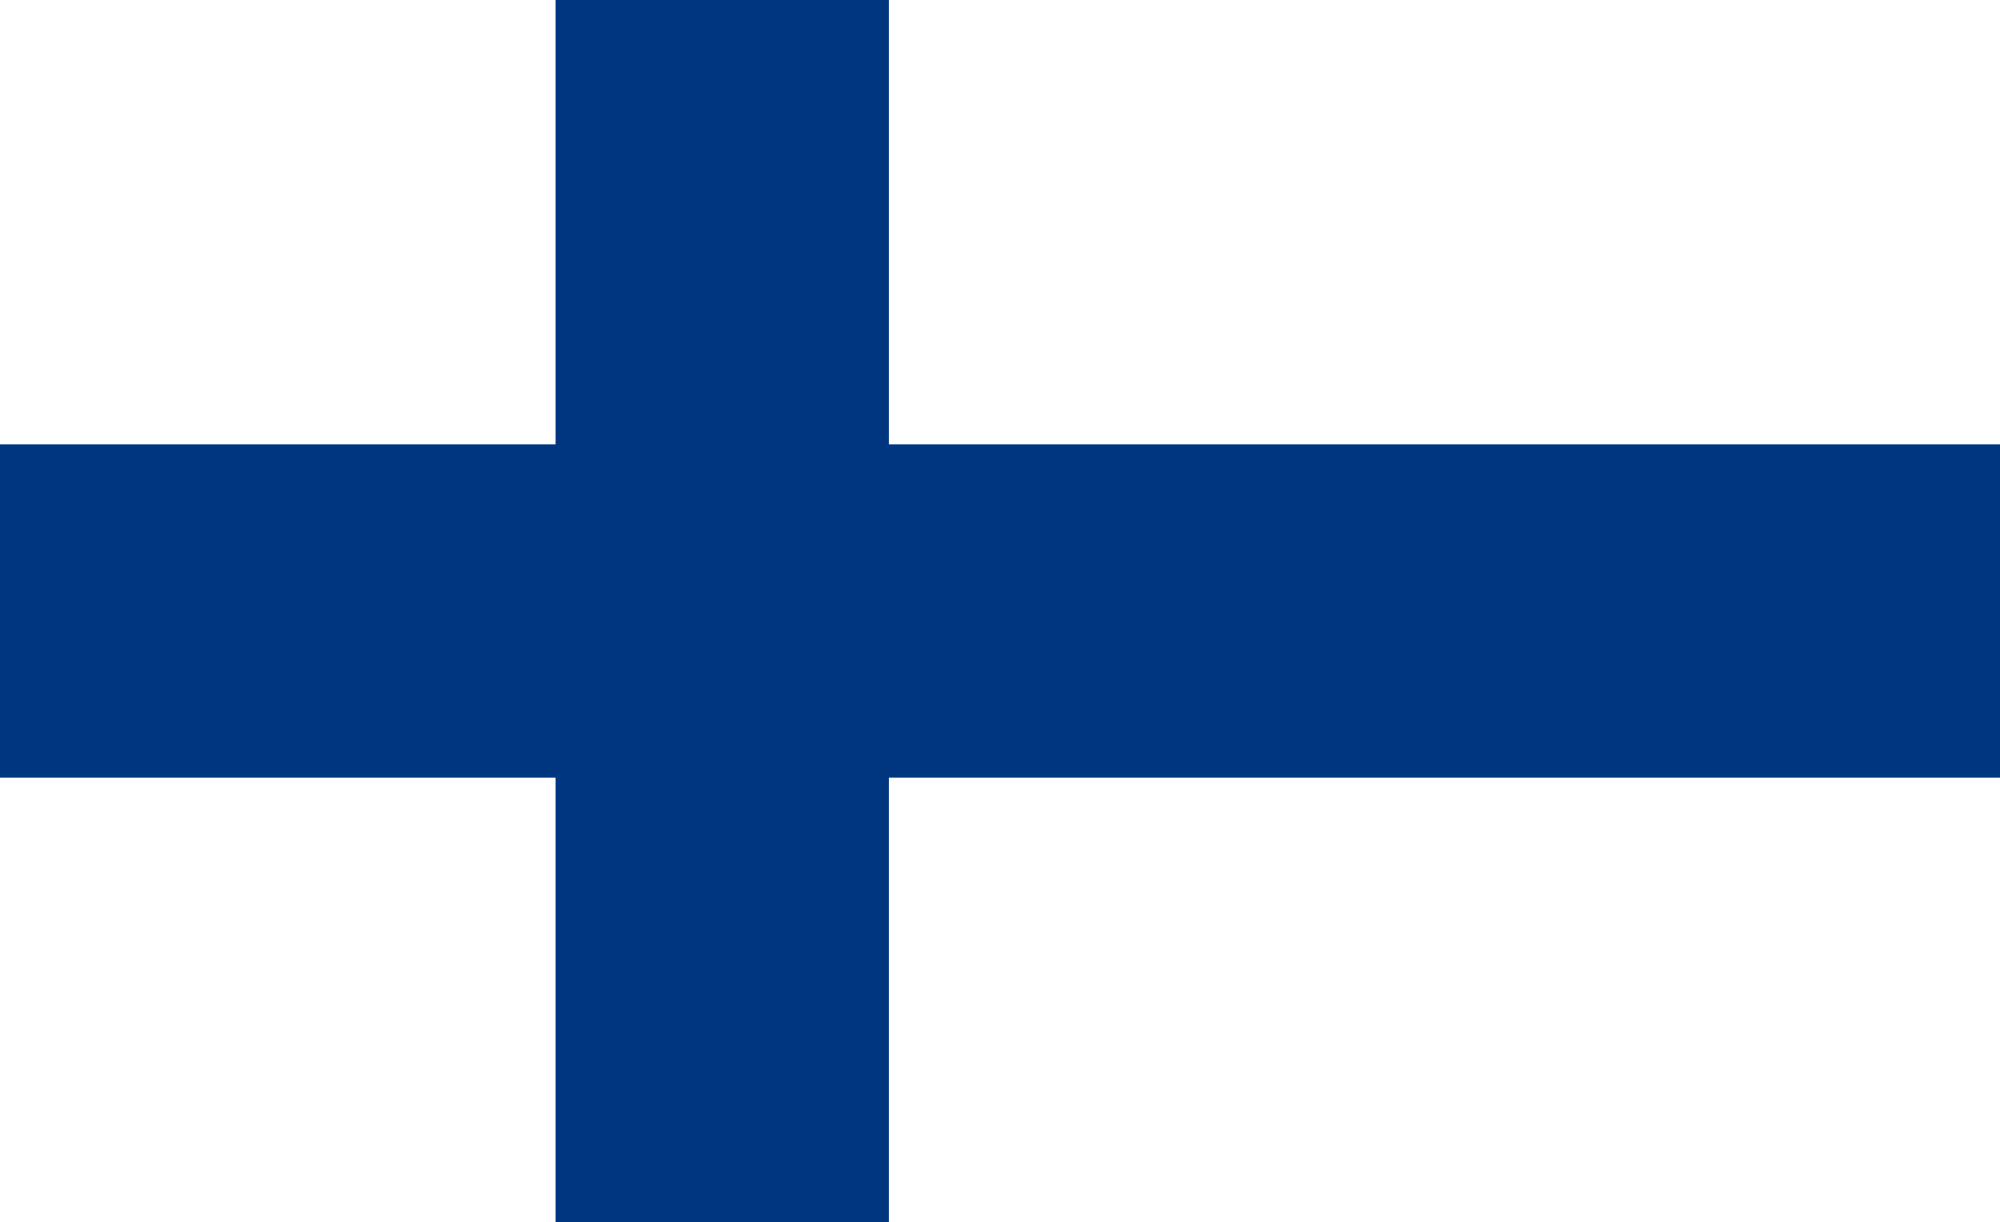 La Finlande porte à 55 le nombre de futures Parties à la Convention de Minamata